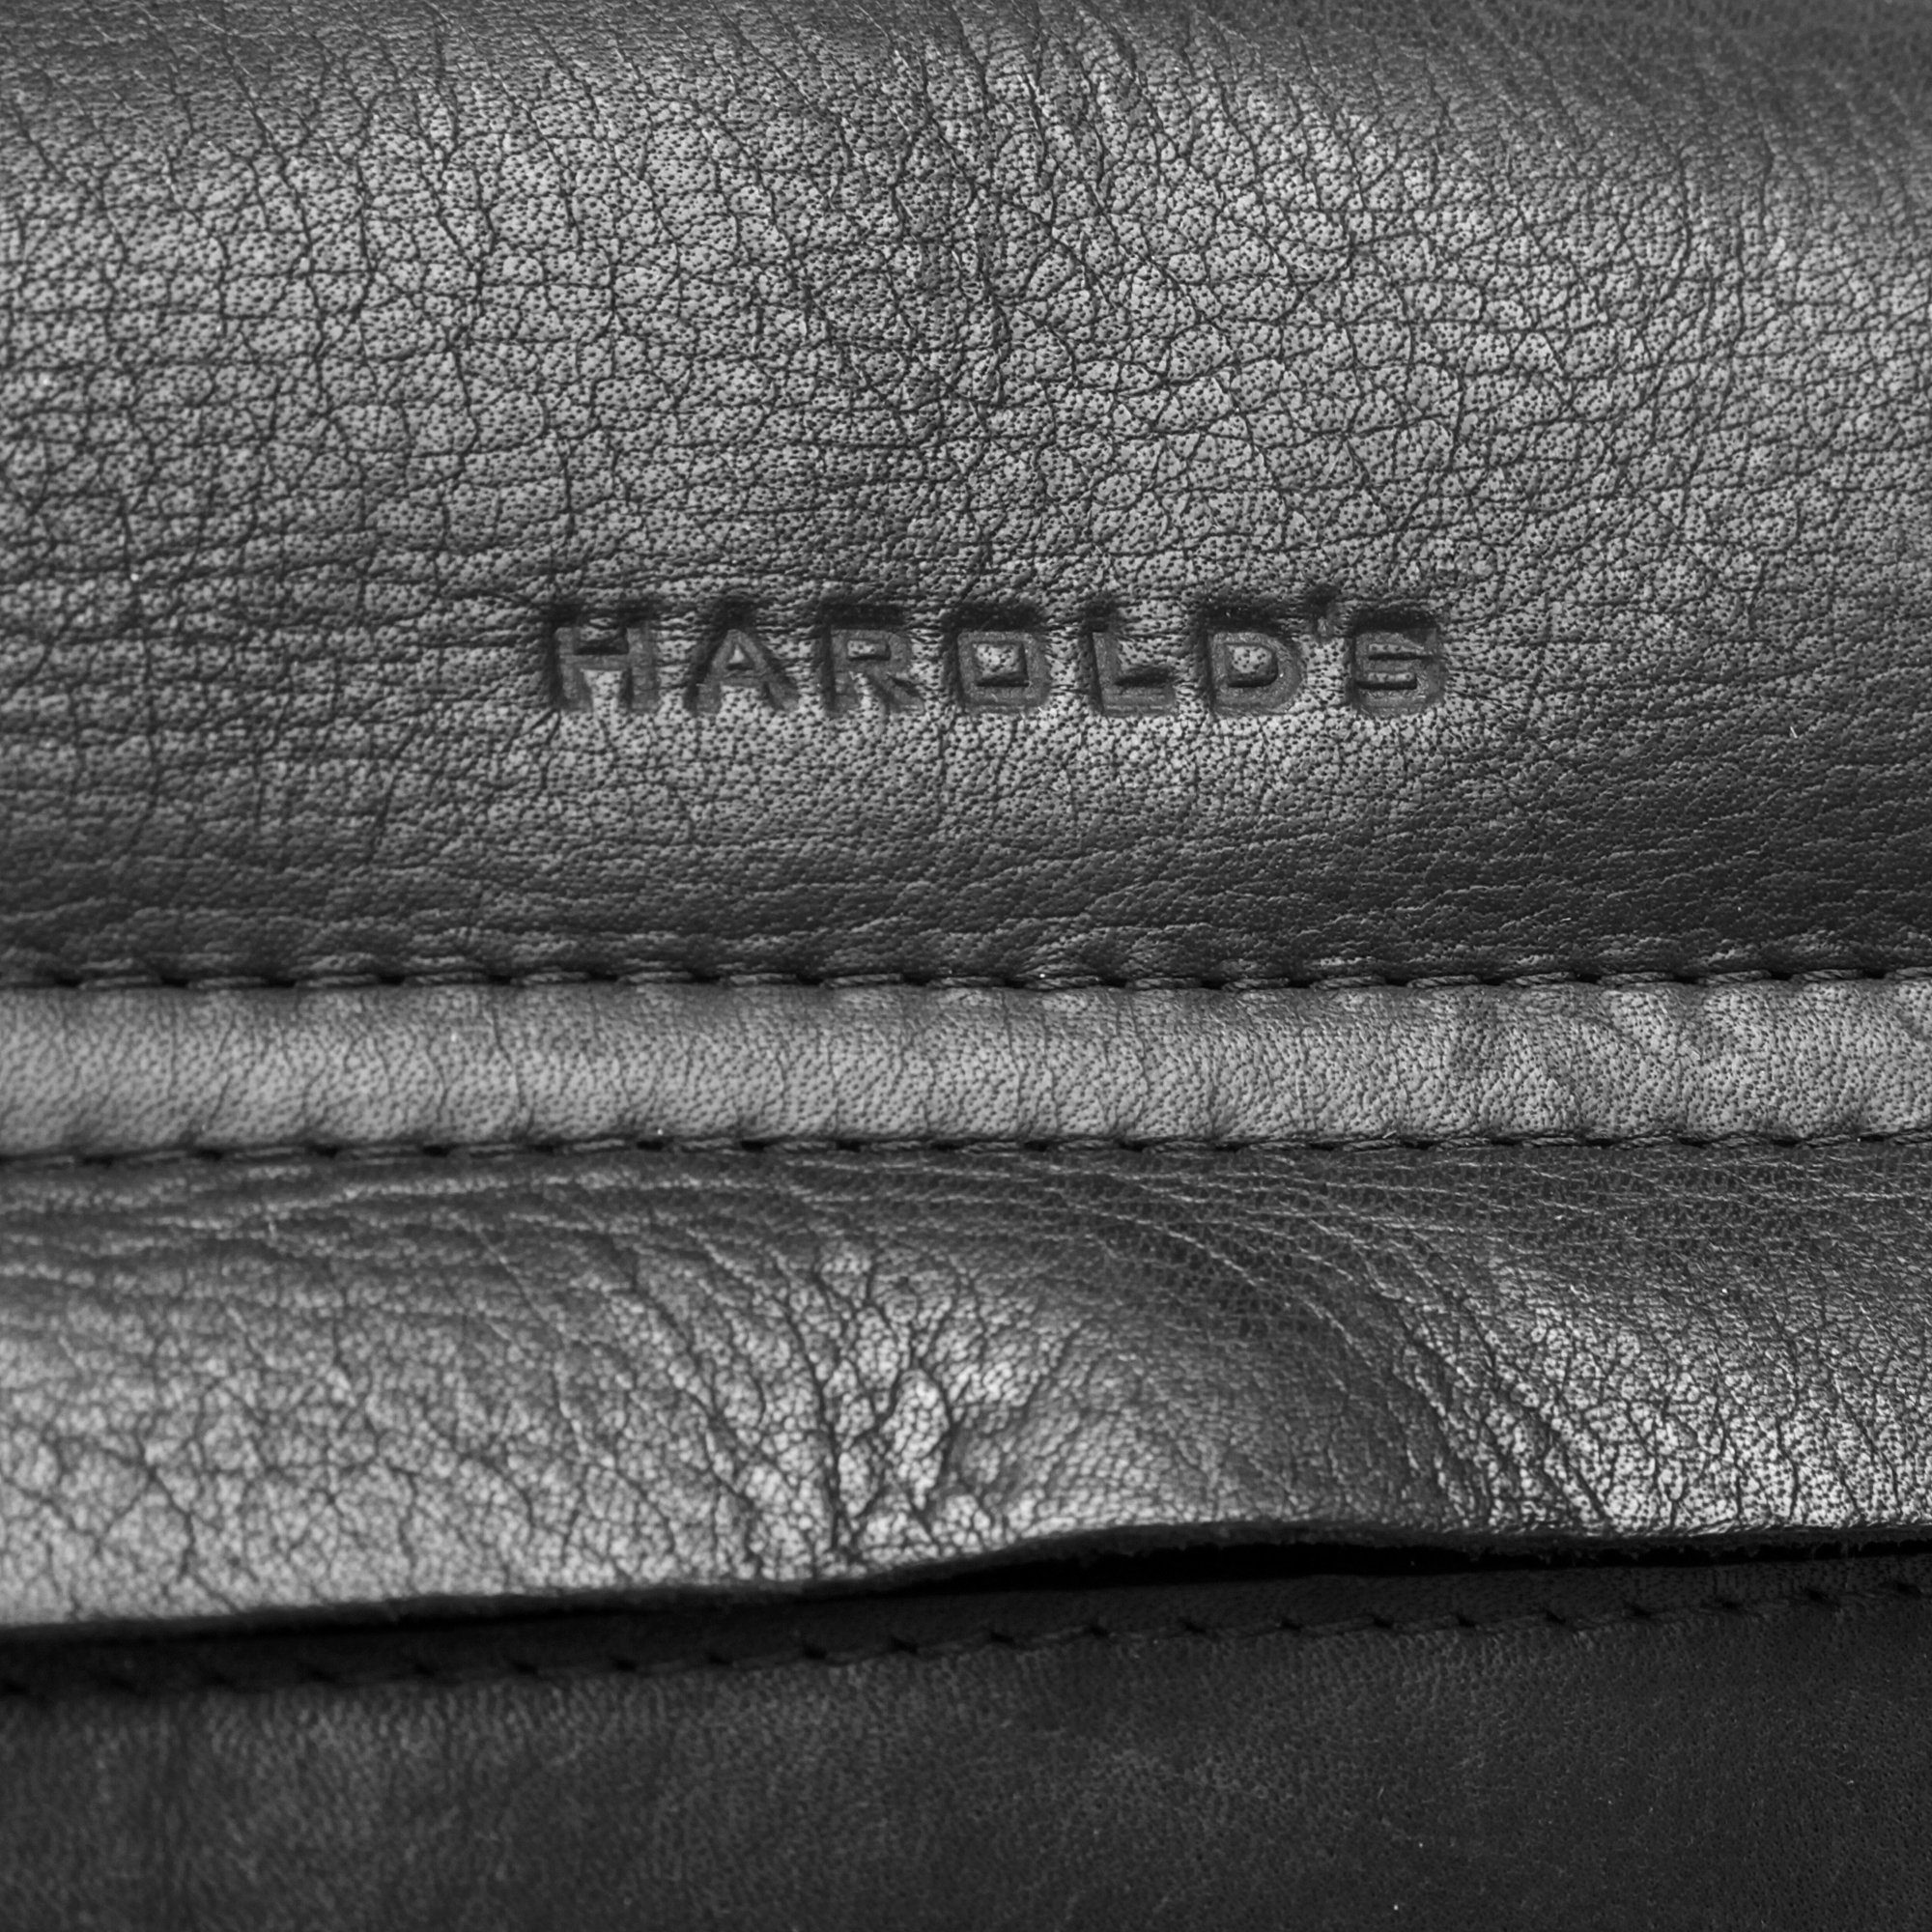 schwarz CAMPO, echt Harold's Leder Umhängetasche